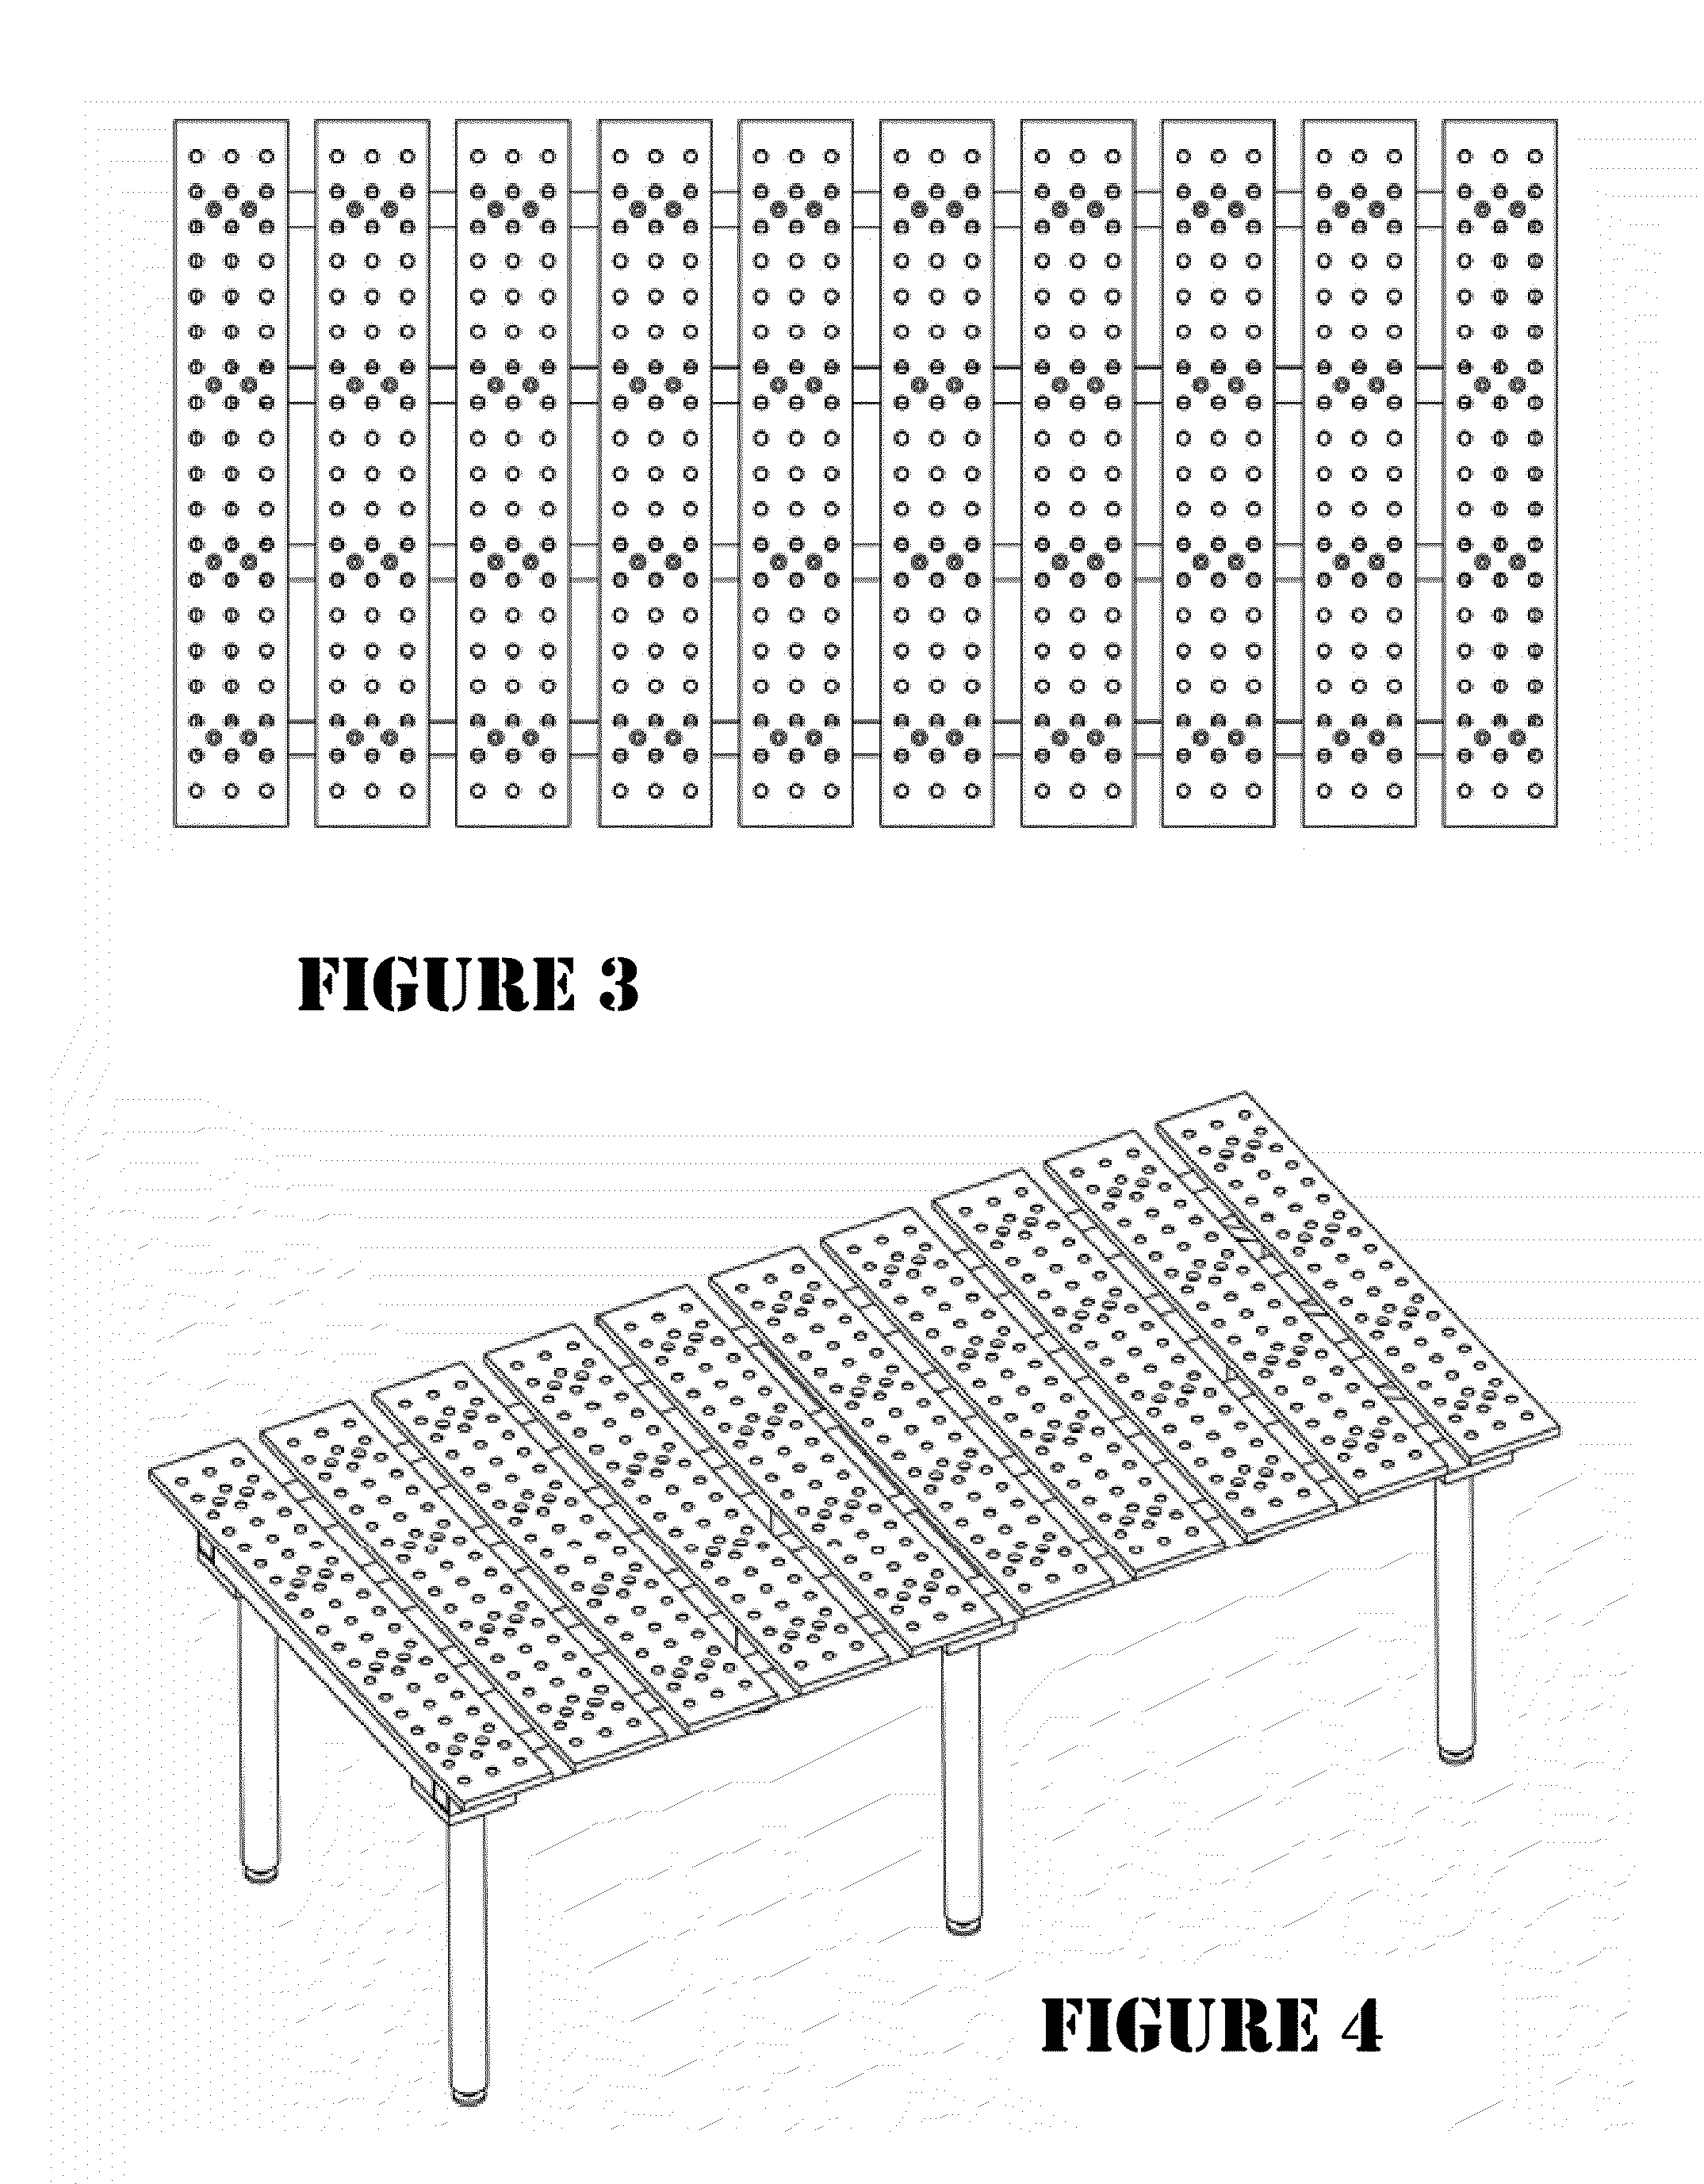 Modular welding table